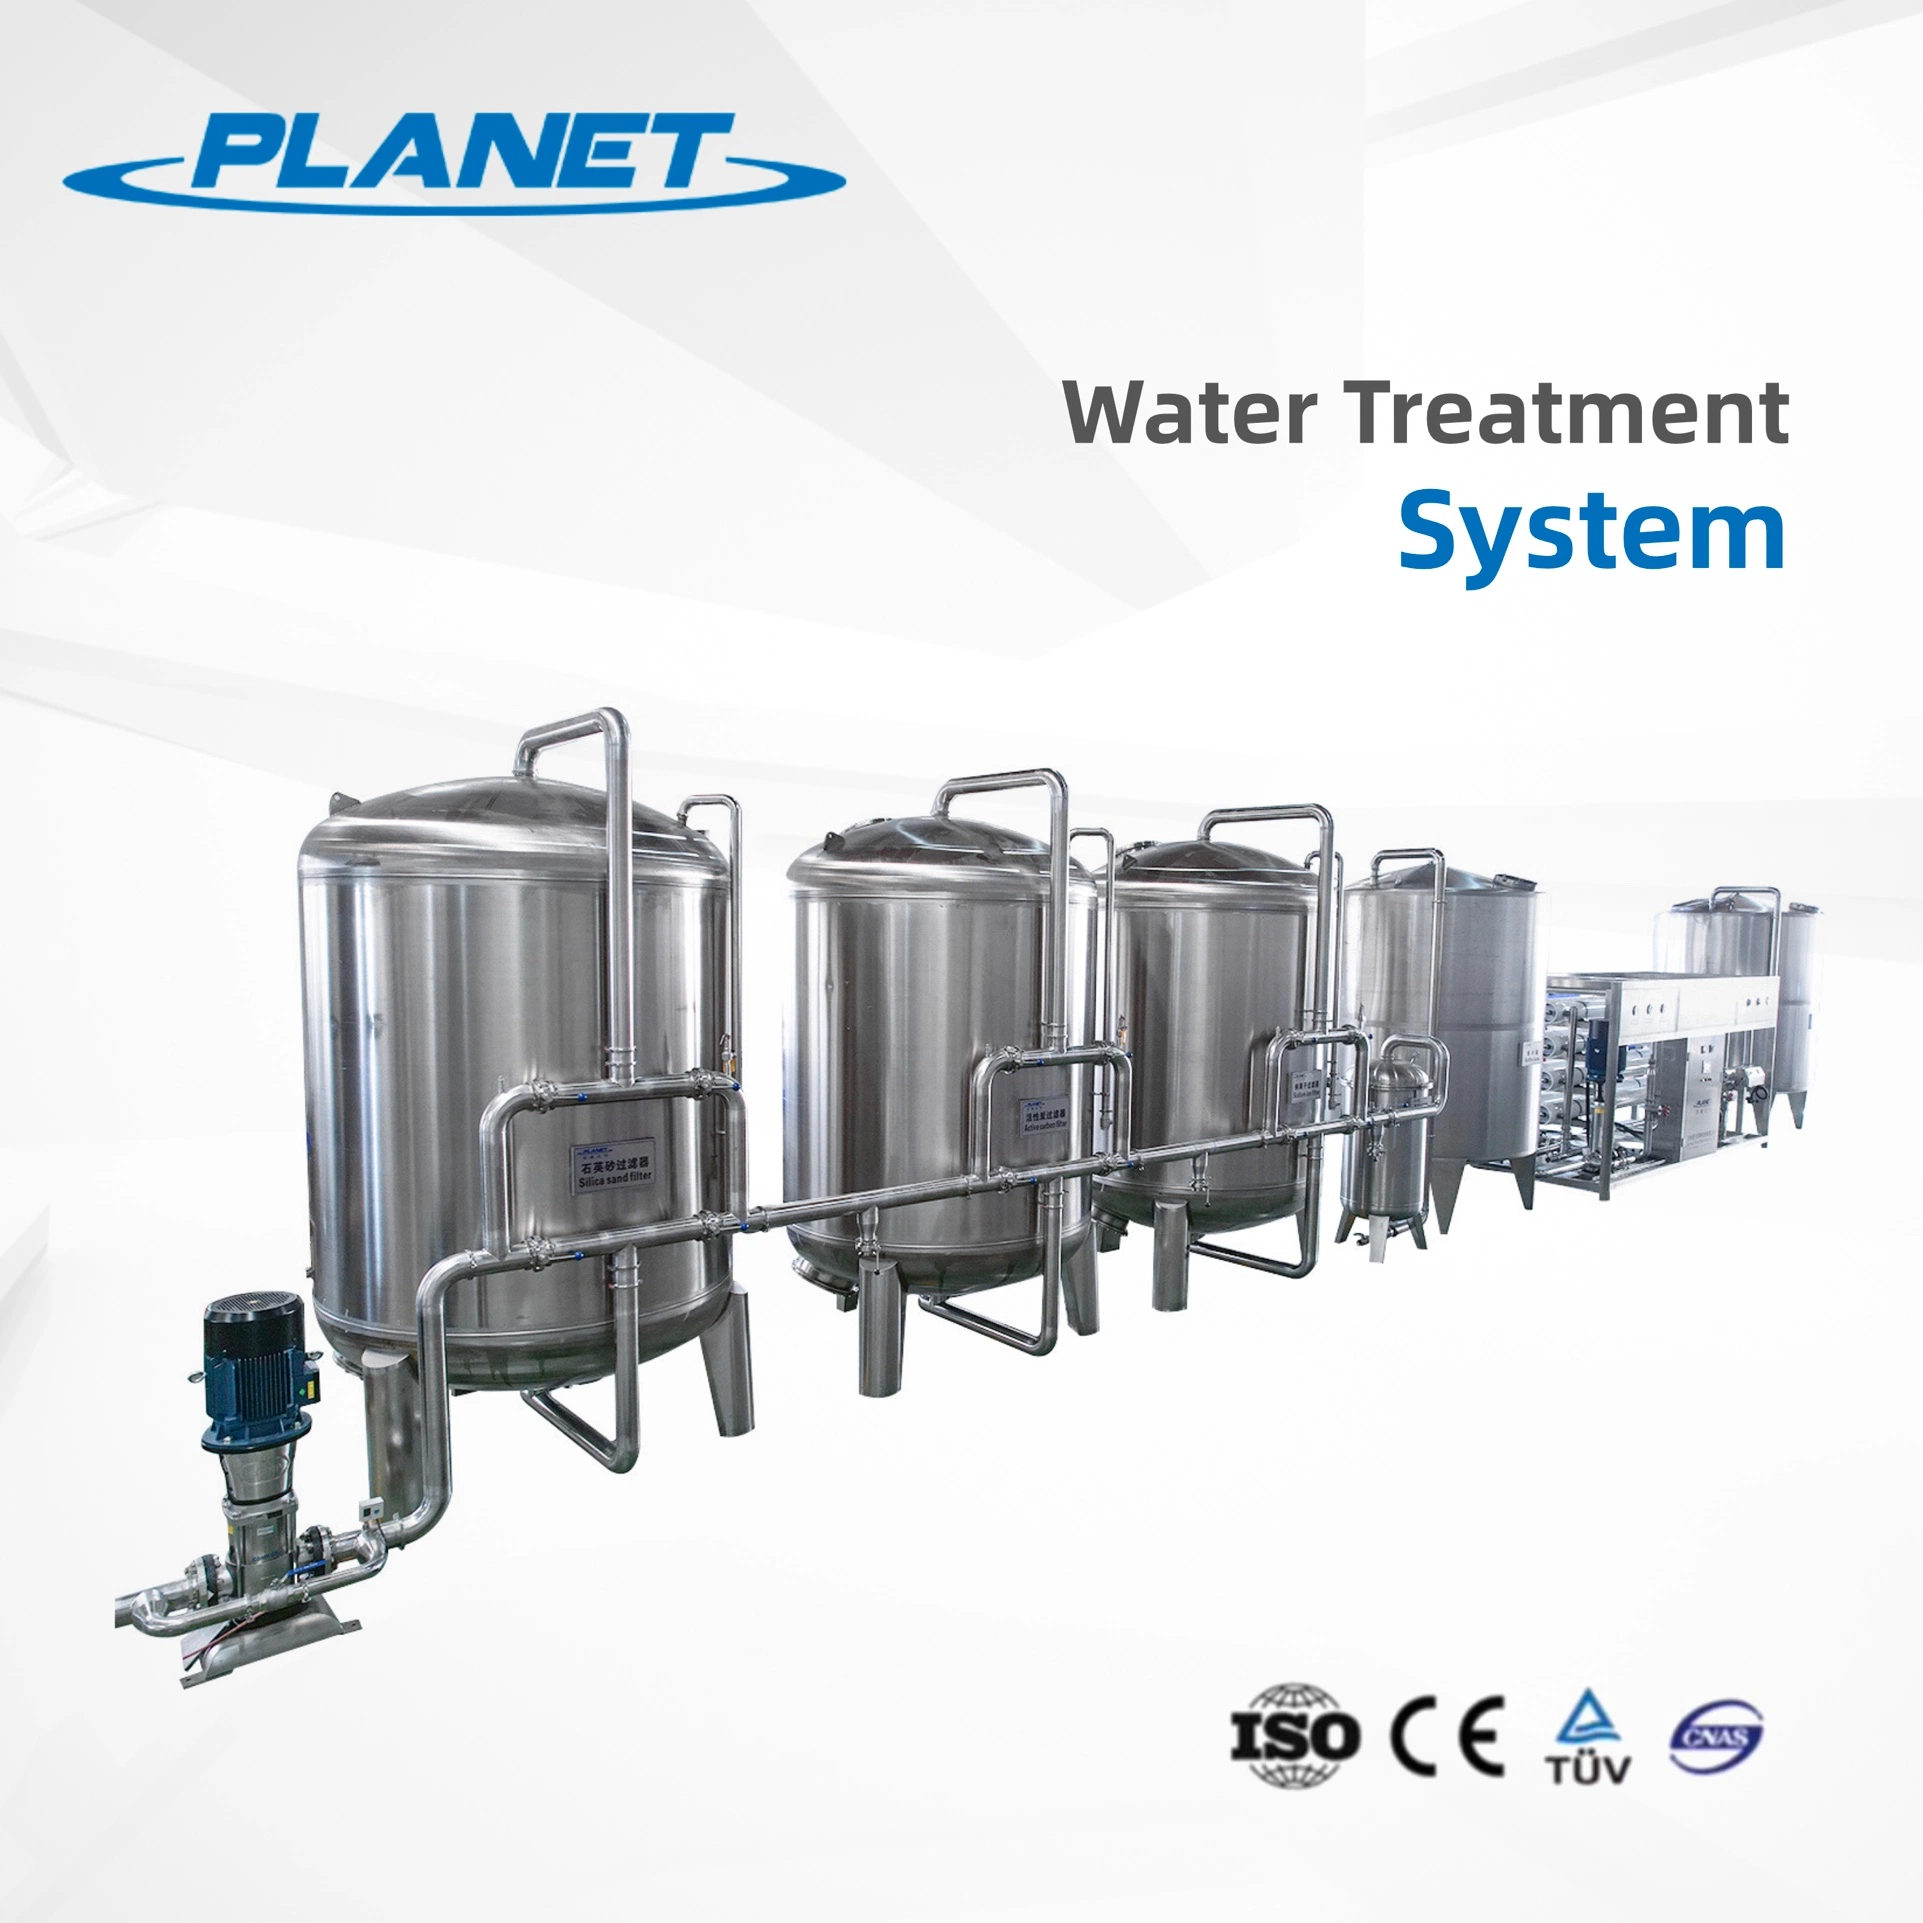 RO Wasser Trinkwasser Entsalzung Industrie Industrielle Abwasserbehandlung Anlagen Wasseraufbereitung Umkehrosmose Wasserfiltersystem Systeme Geräte